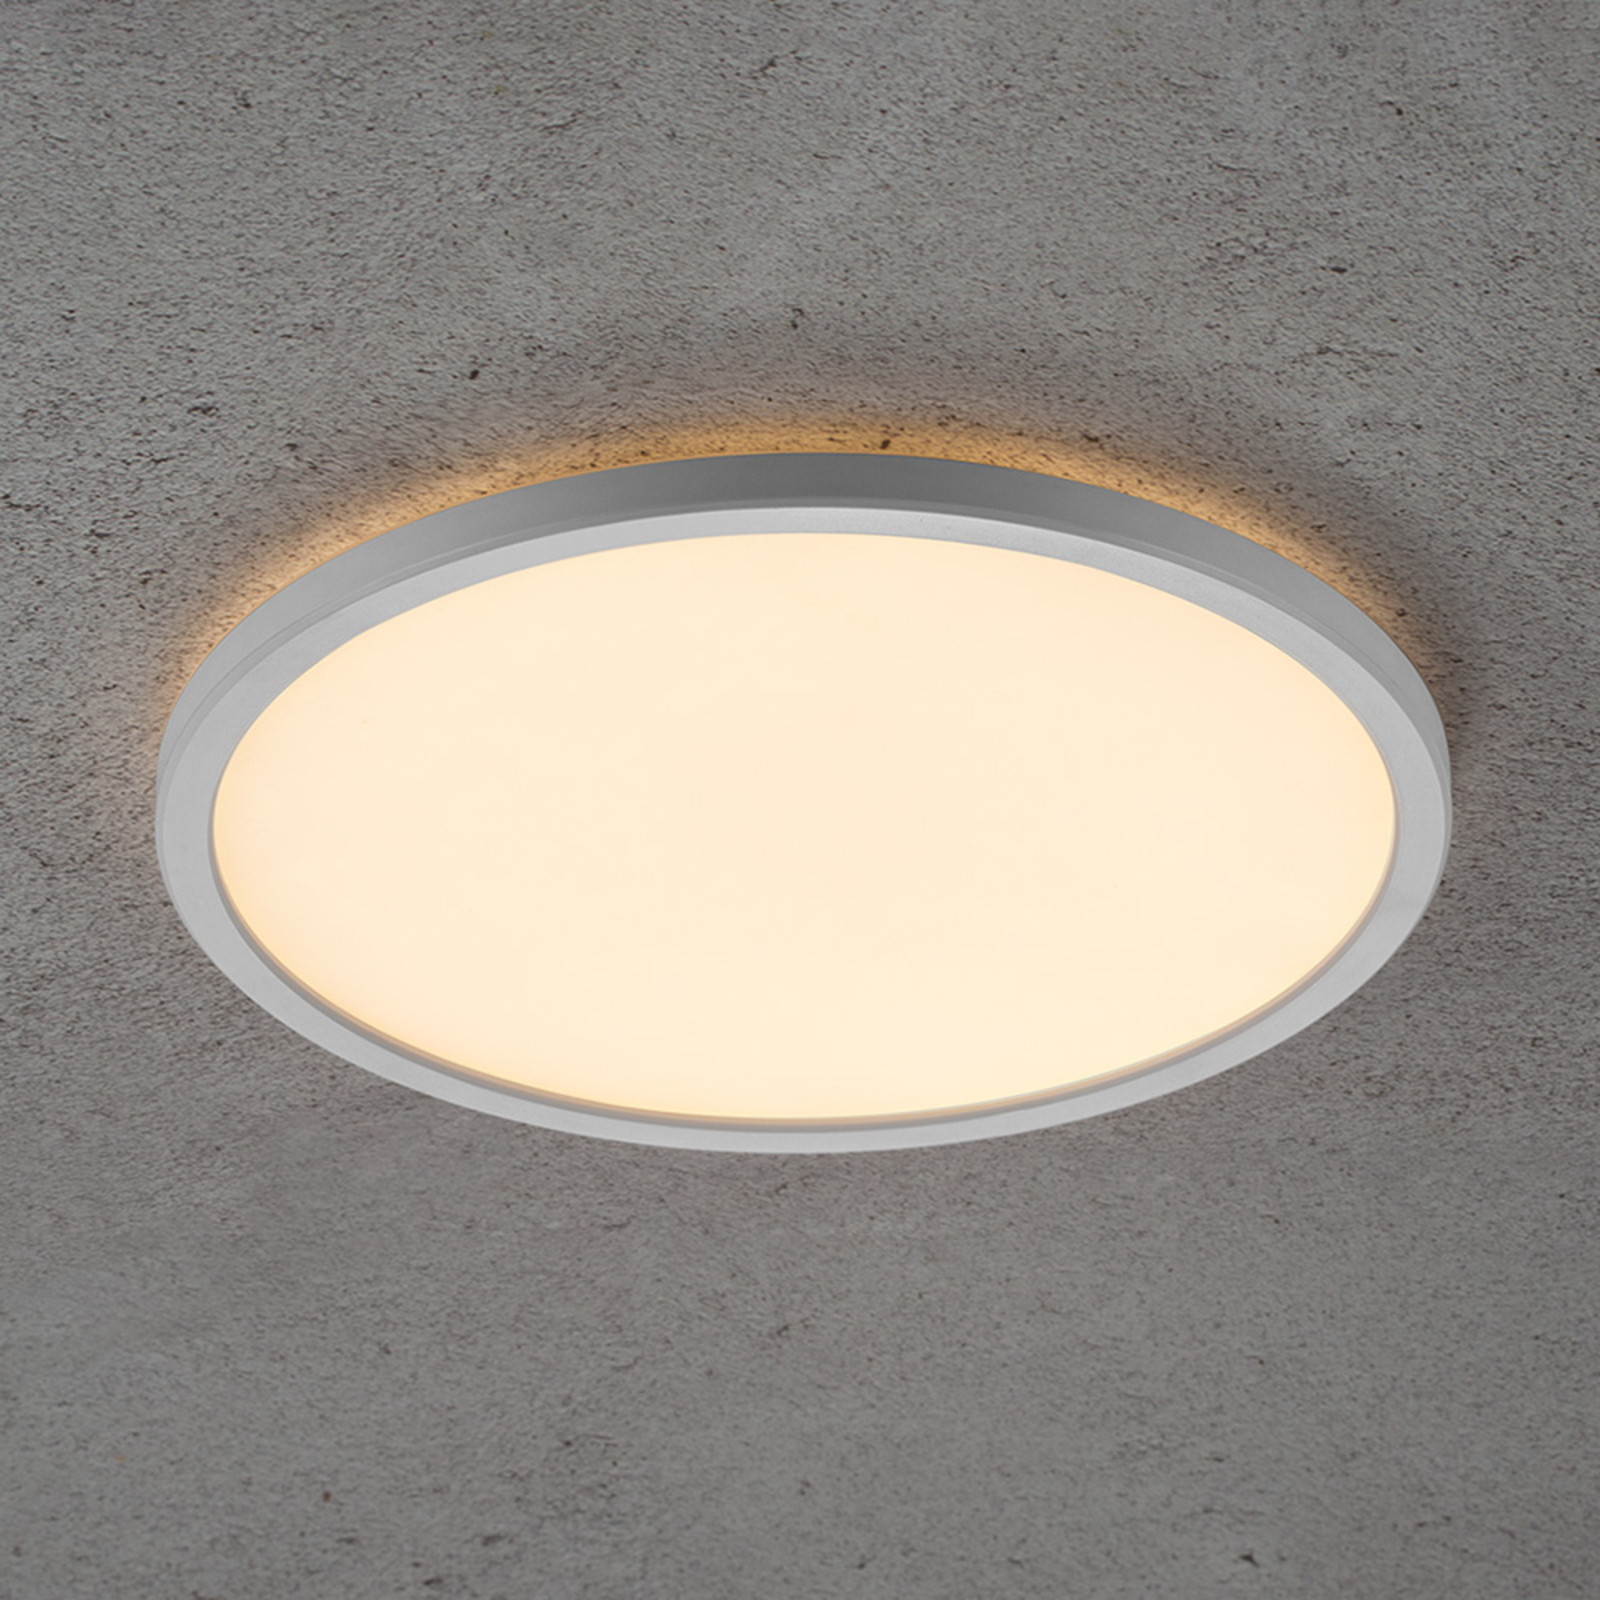 LED-taklampe Planura, dimbar, Ø 29 cm